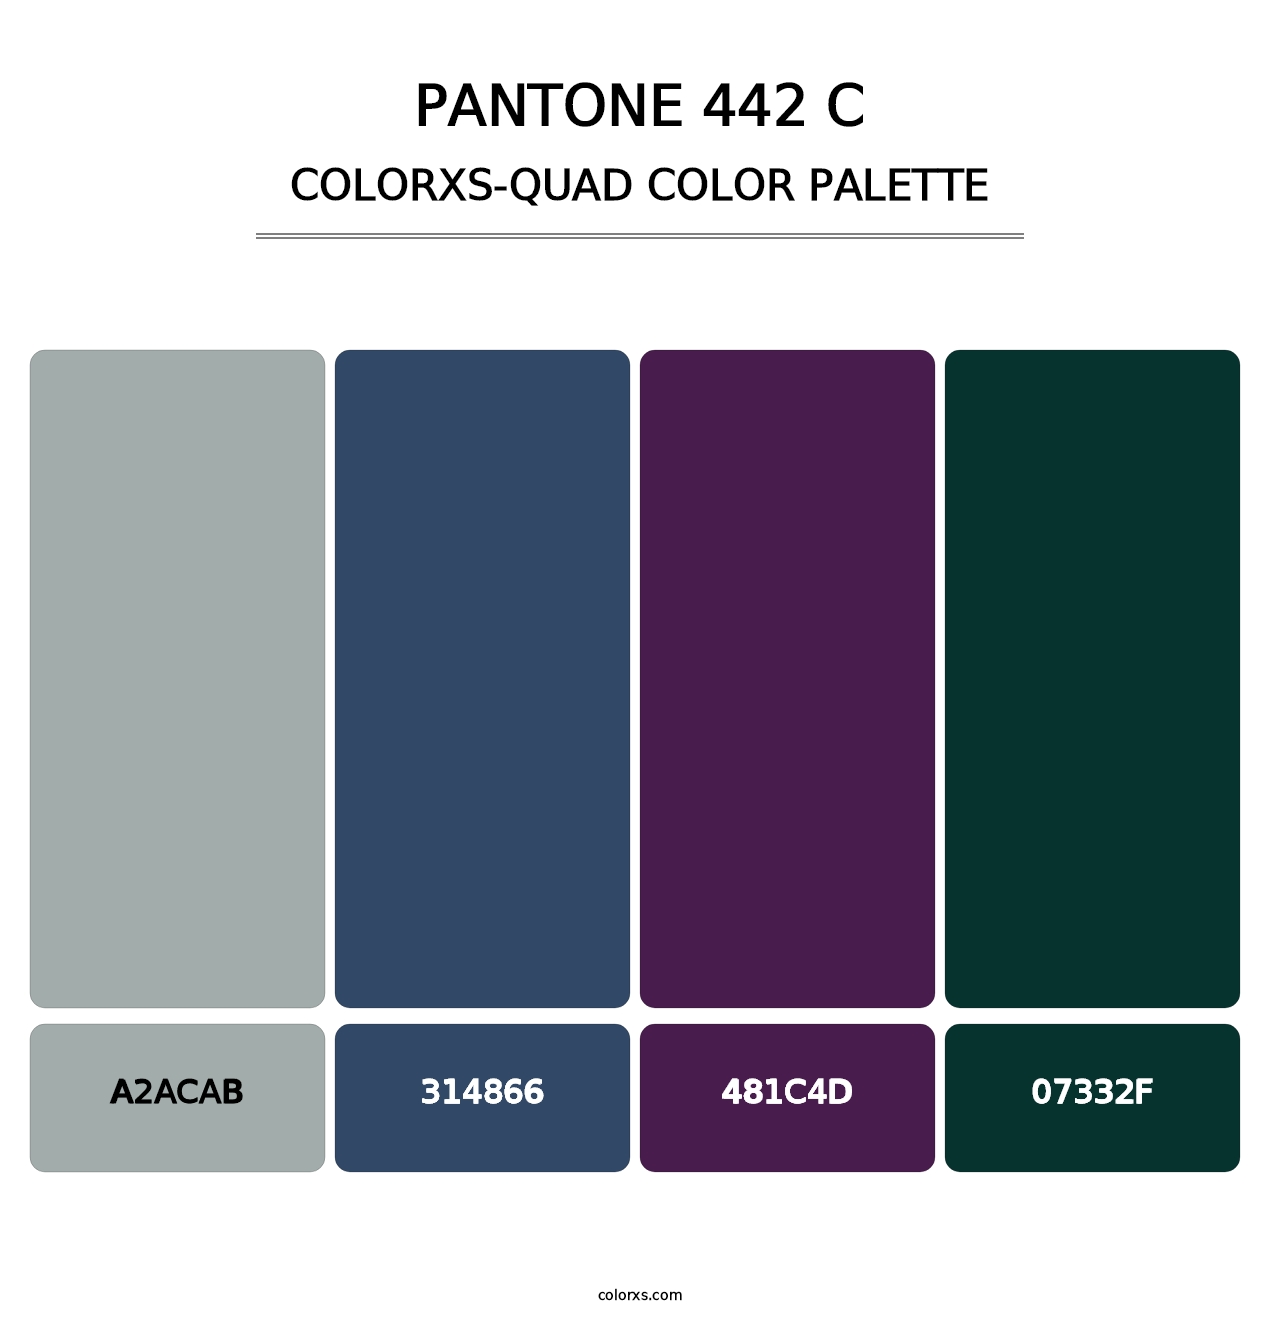 PANTONE 442 C - Colorxs Quad Palette